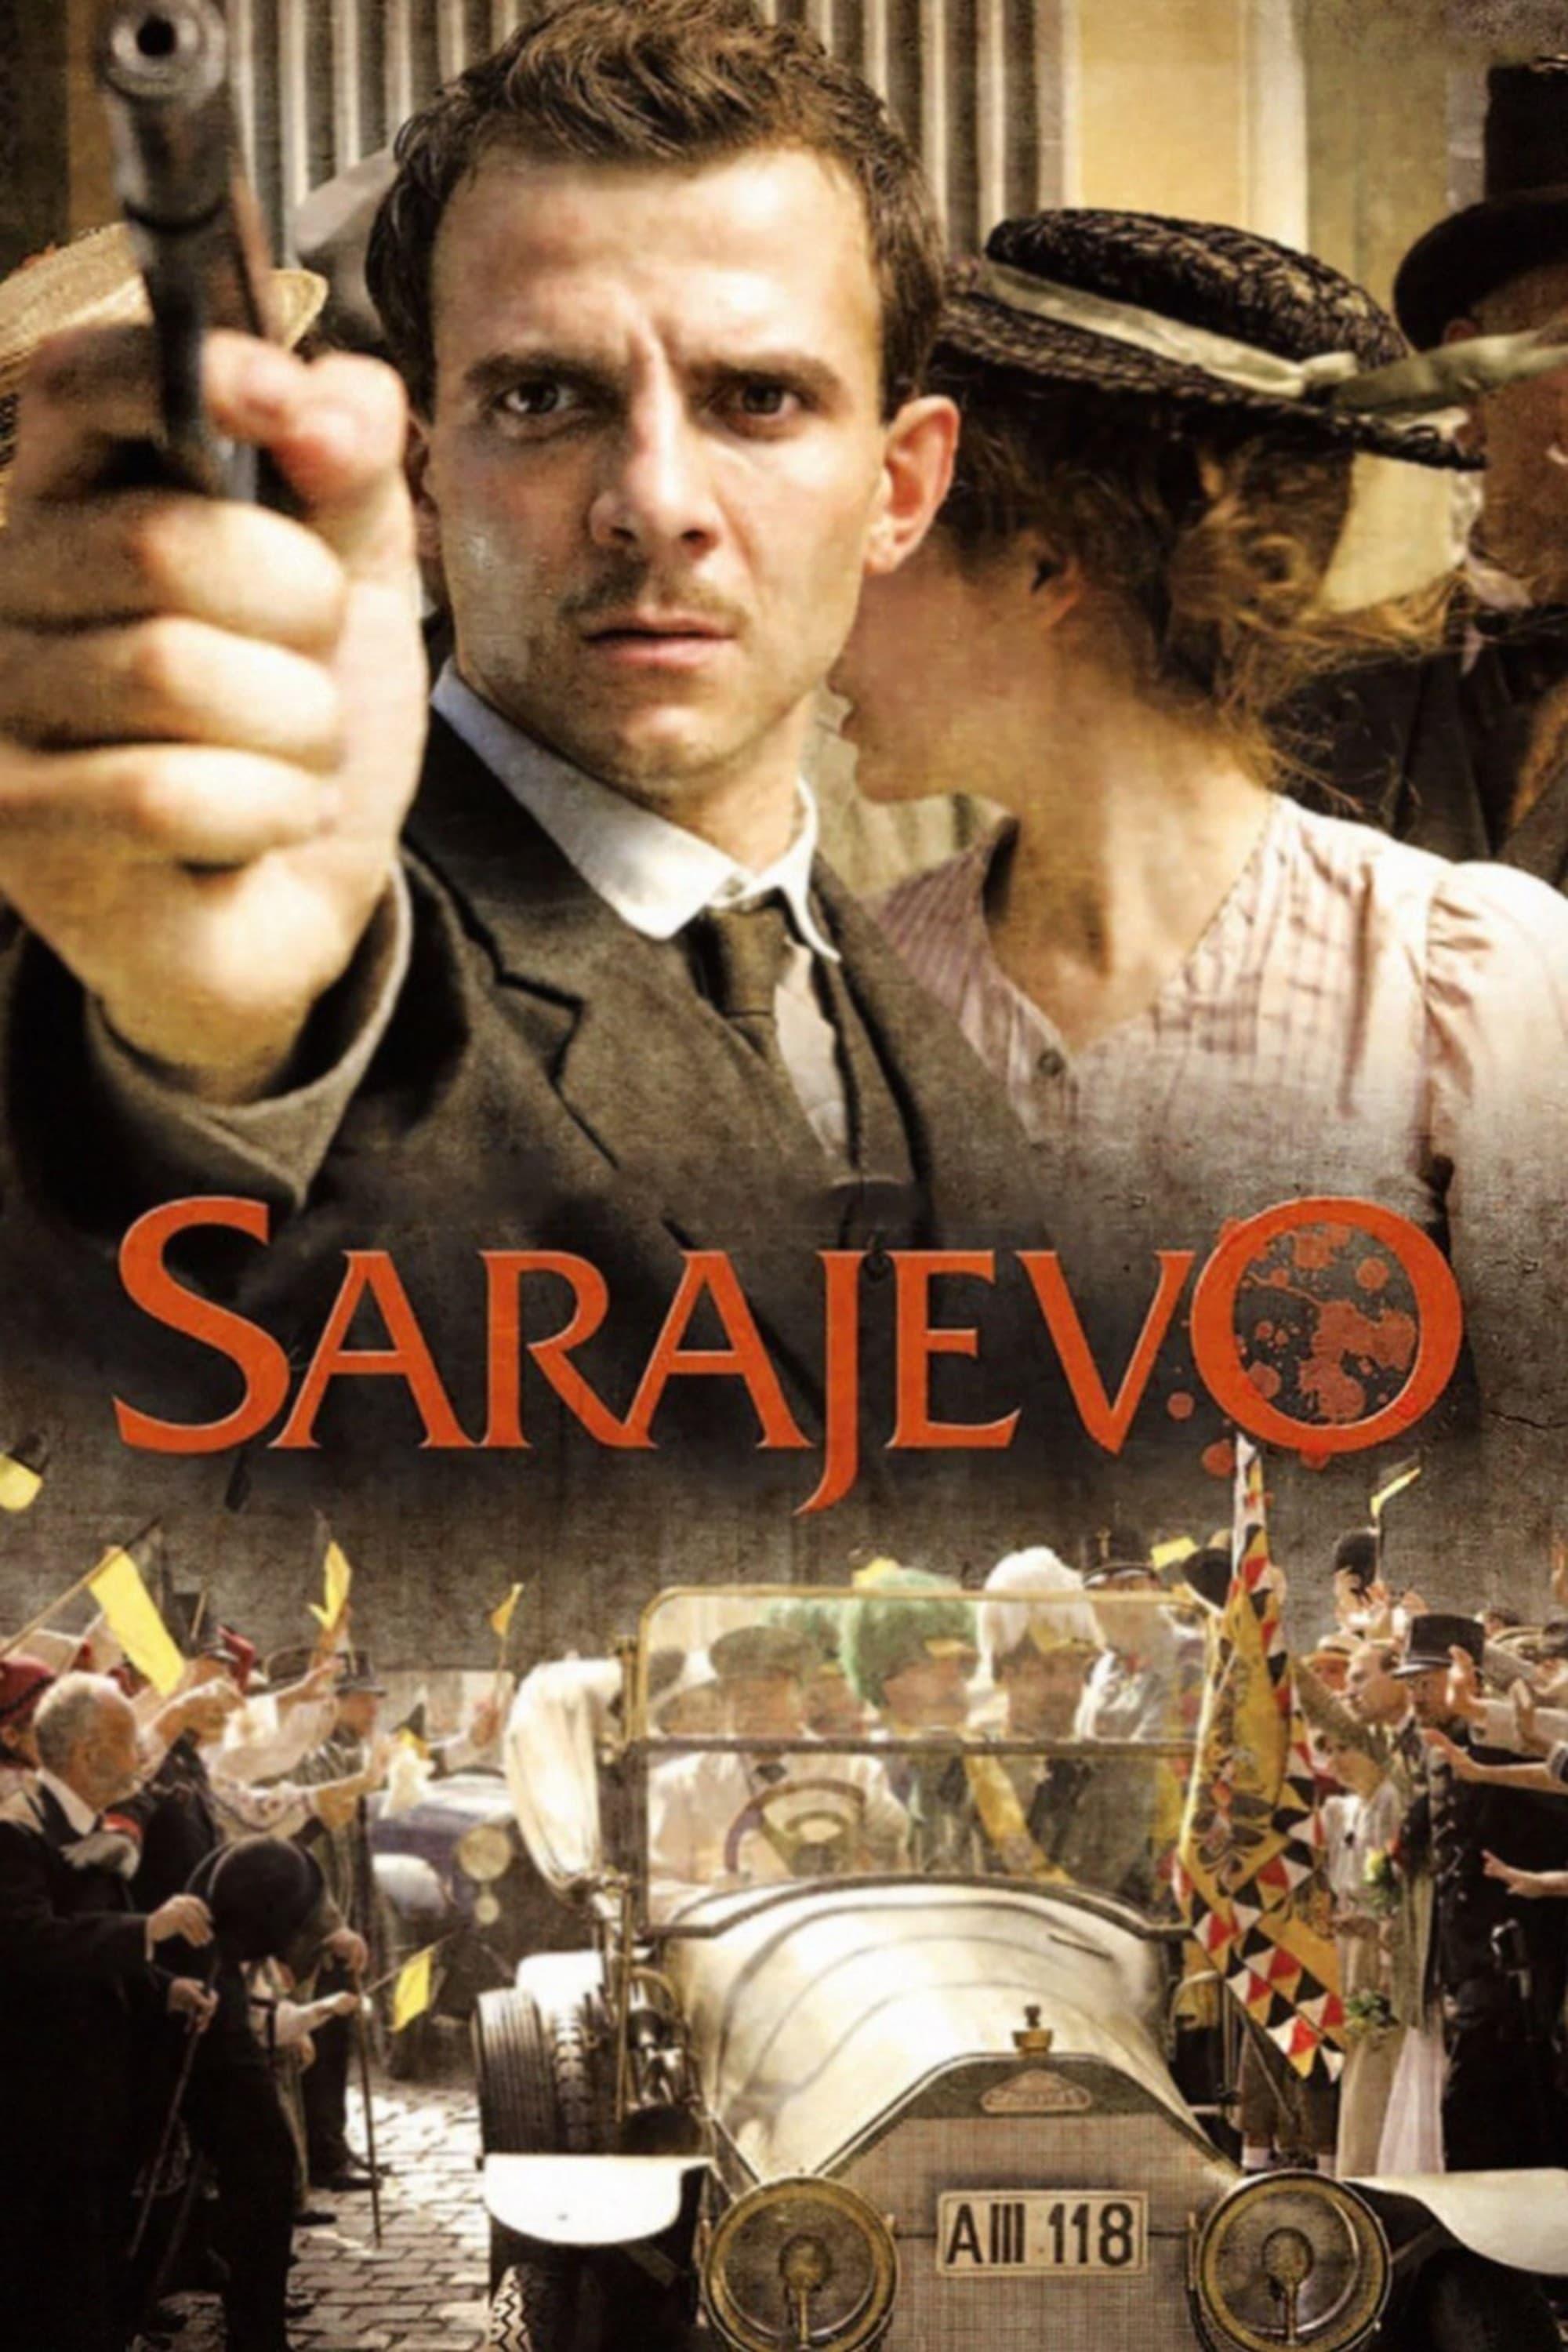 Das Attentat - Sarajevo 1914 poster